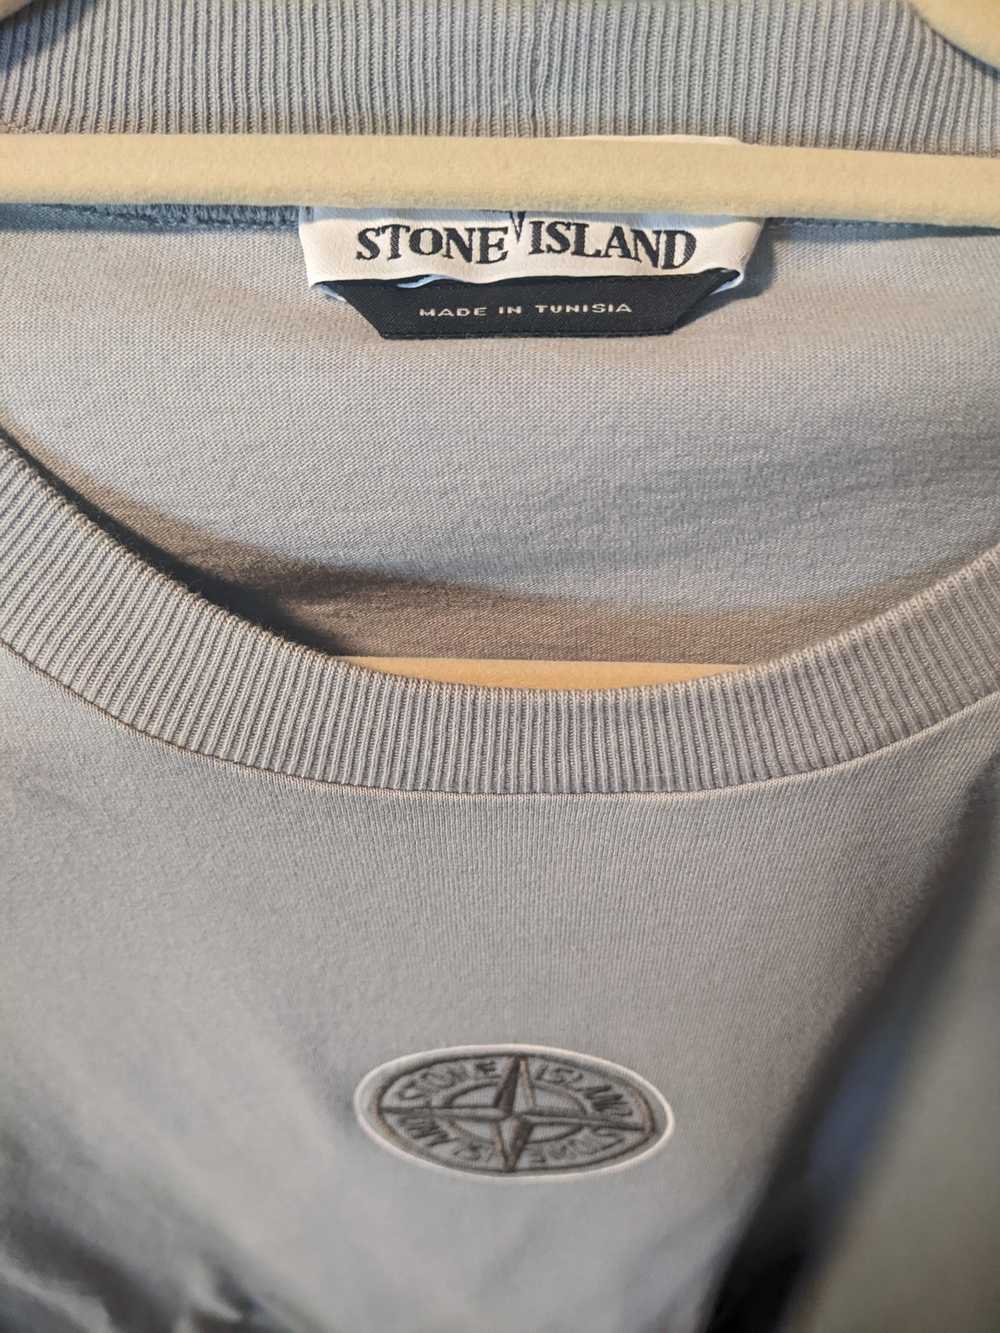 Stone Island Stone Island Long Sleeve T-Shirt - image 3